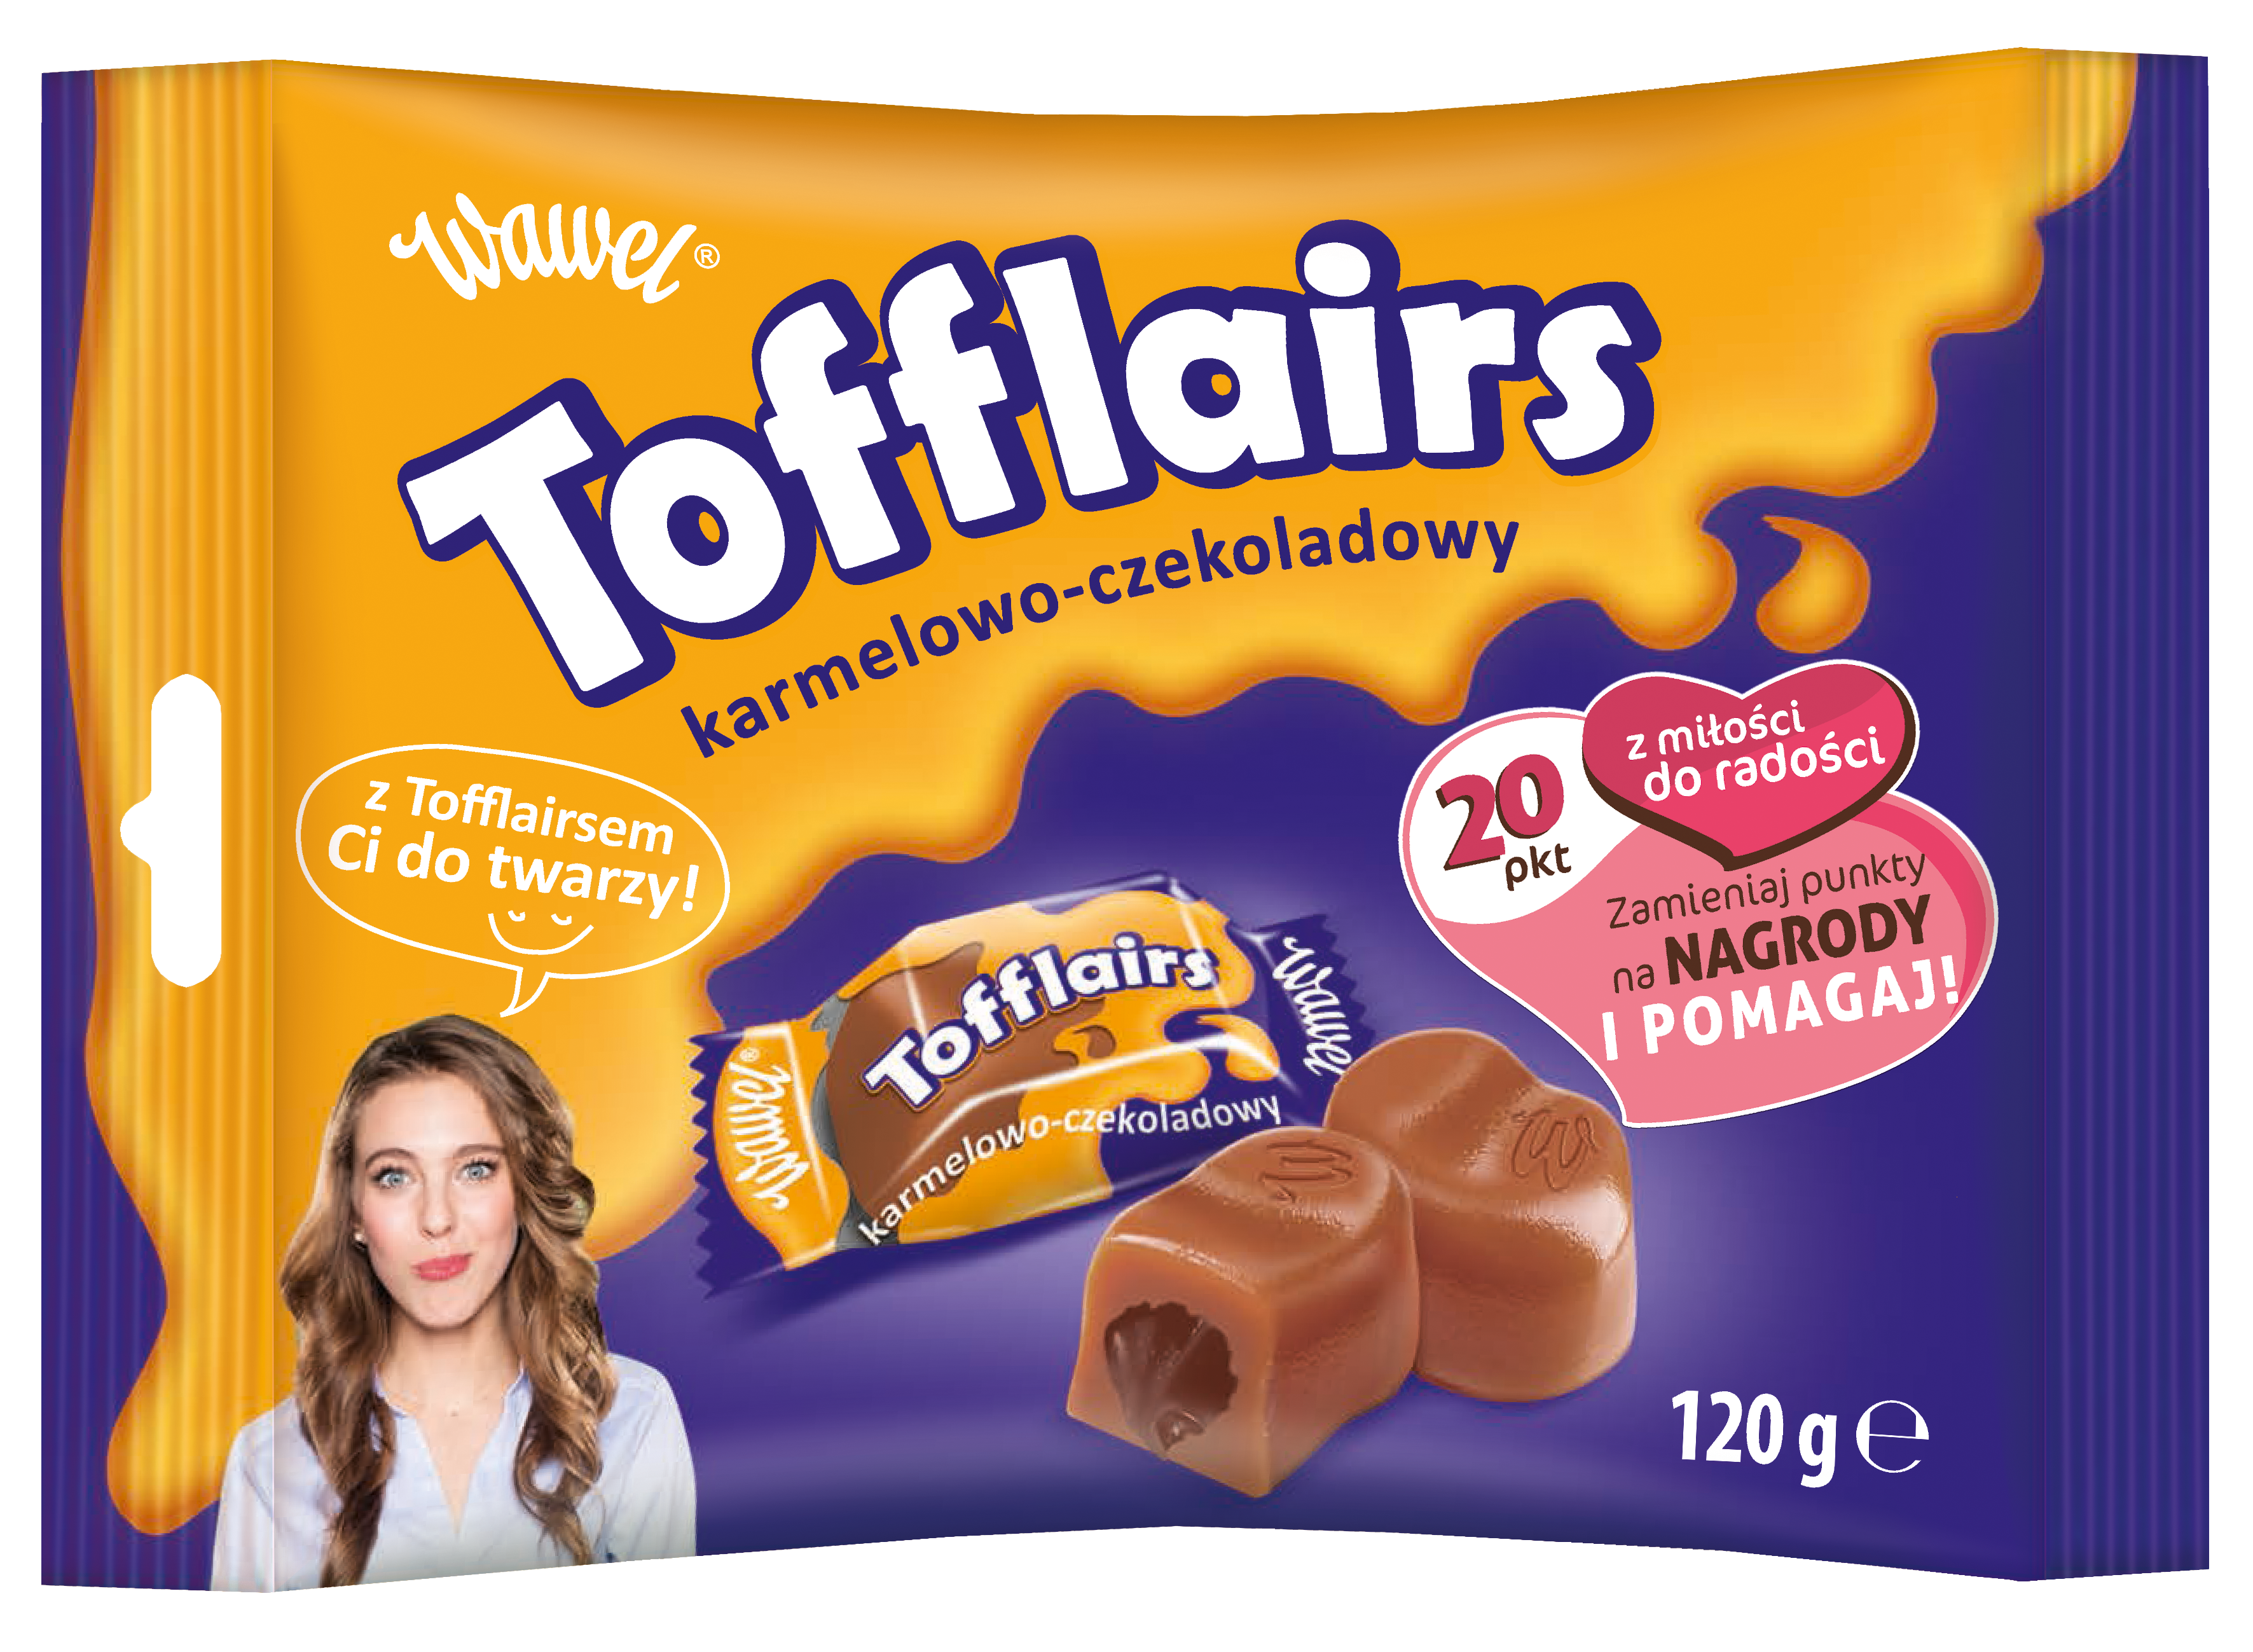 Tofflairs – karmelowo-czekoladowa nowość od Wawelu